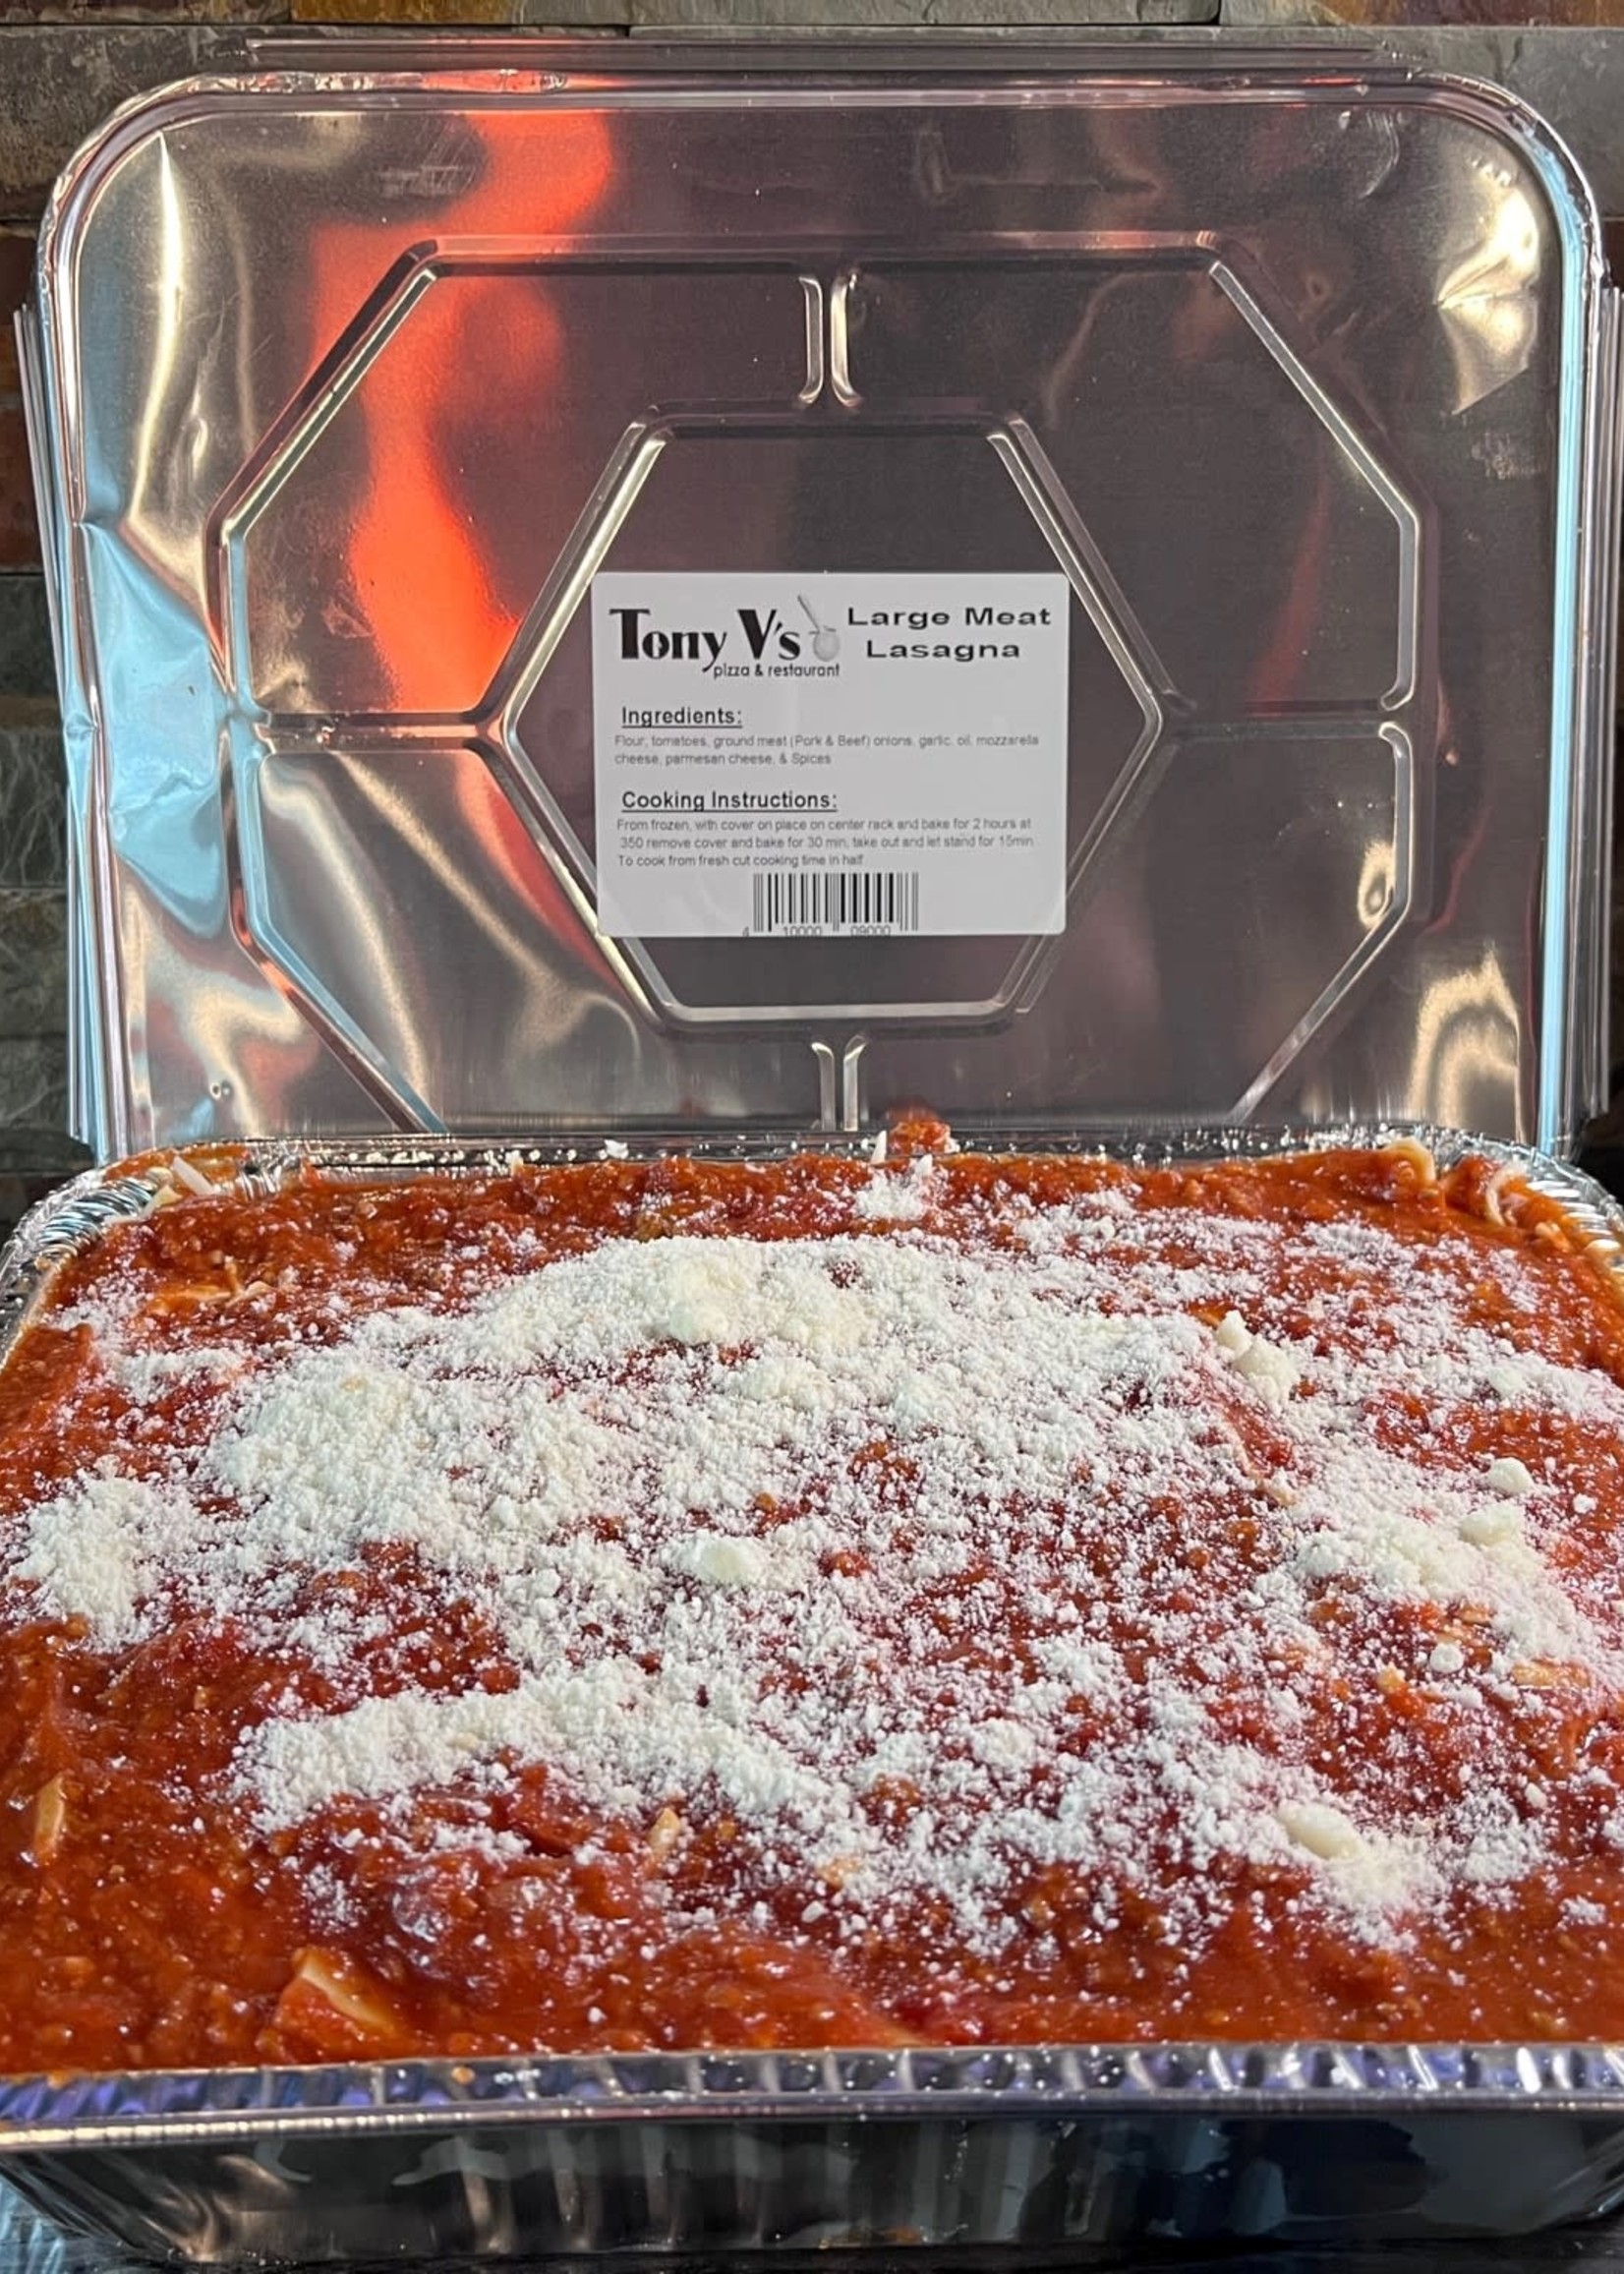 Tony Vs Pizza & Restaurant Meat Lasagna (Tony Vs)  Large